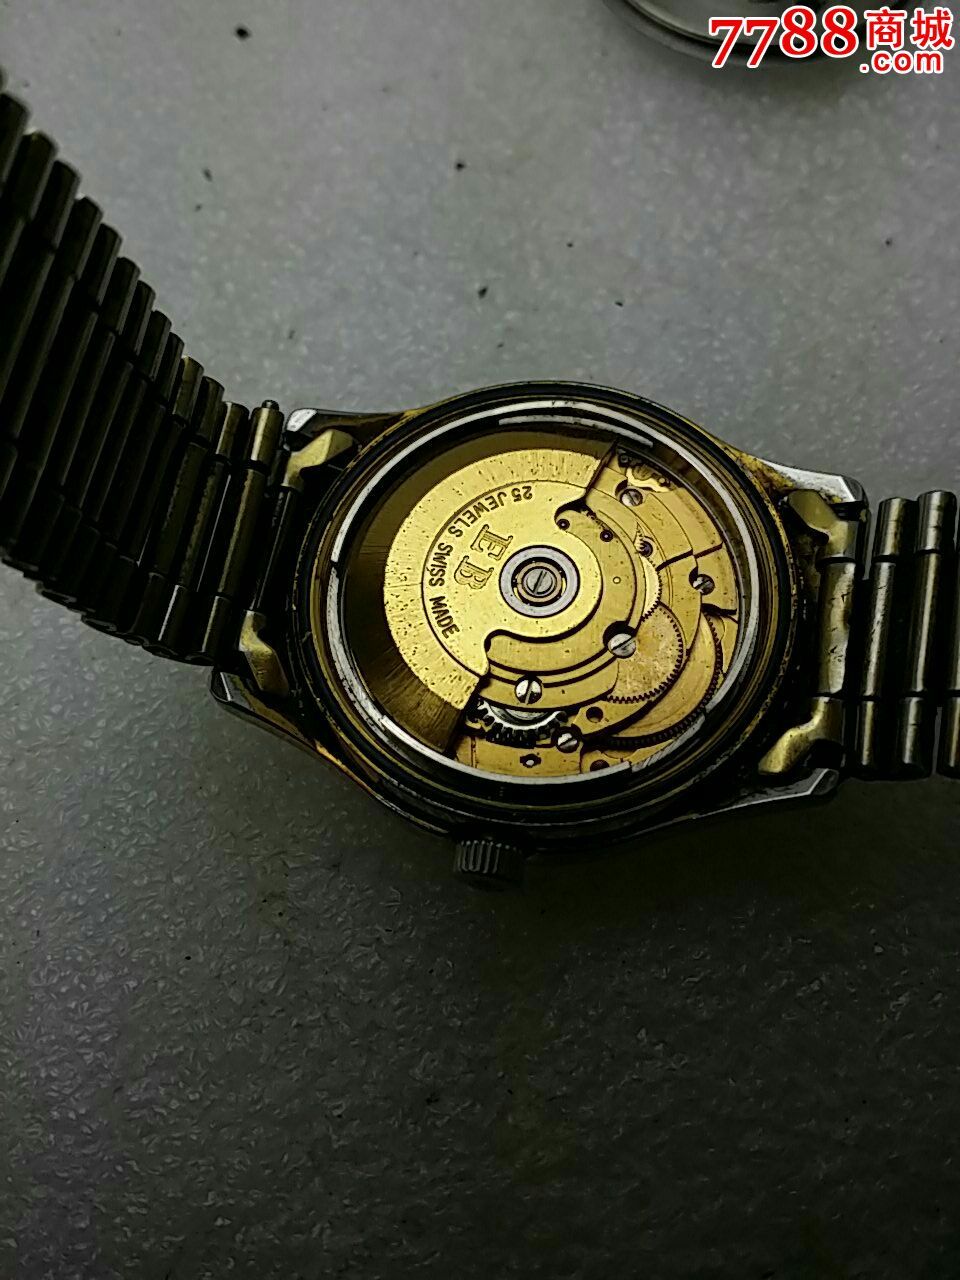 原装全自动瑞士手表依波路,手表\/腕表,机械,九十